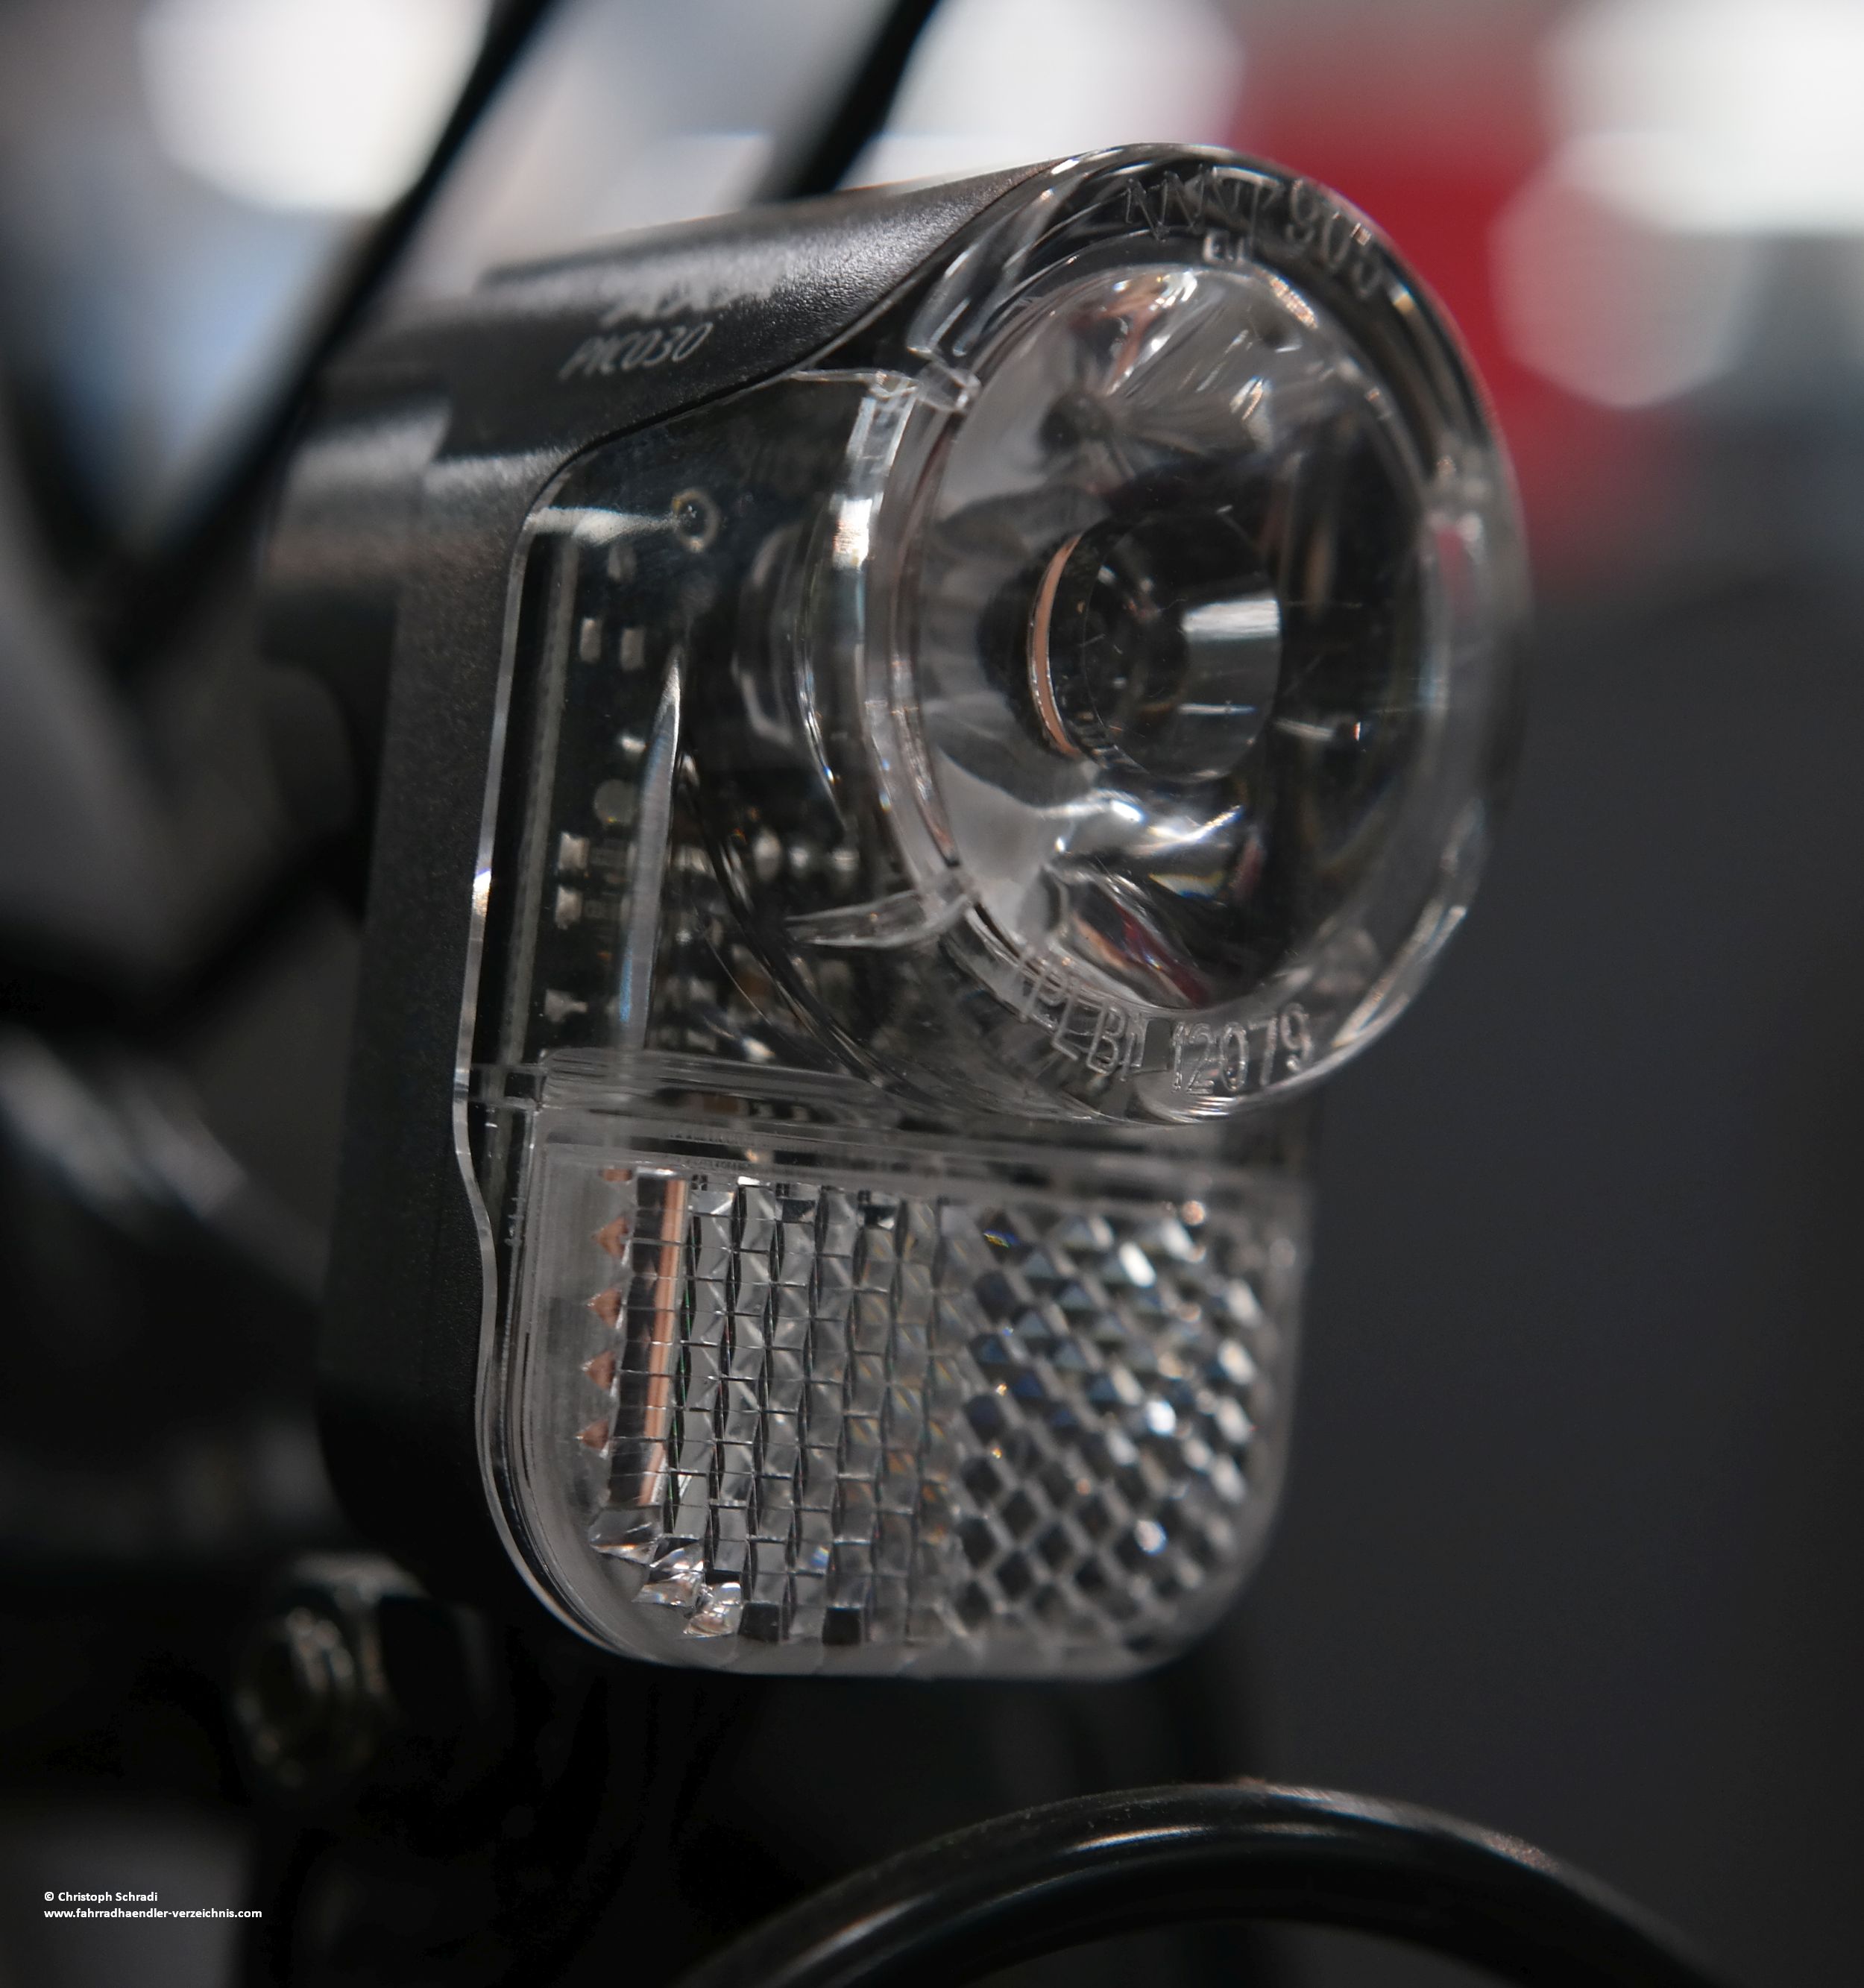 E-Bike Beleuchtung von Axa: die Pico30 mit 30 Lux Beleuchtungsstärke wird gerne an E-Bikes verschiedener Preisklassen verbaut